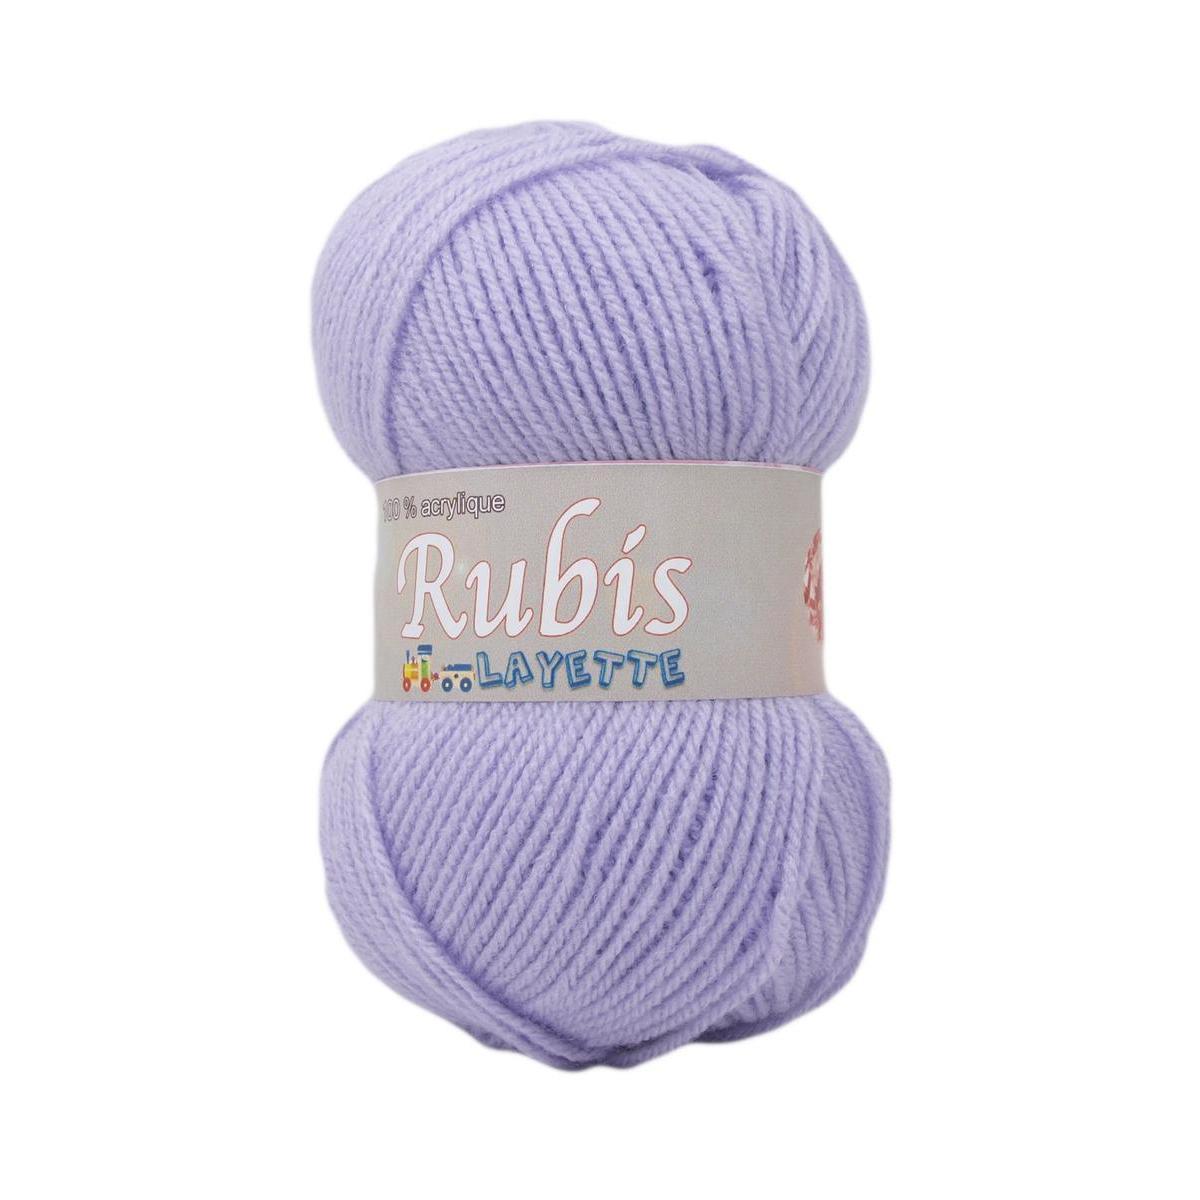 2 pelotes Rubis layette - 50 g - Différents coloris - Violet